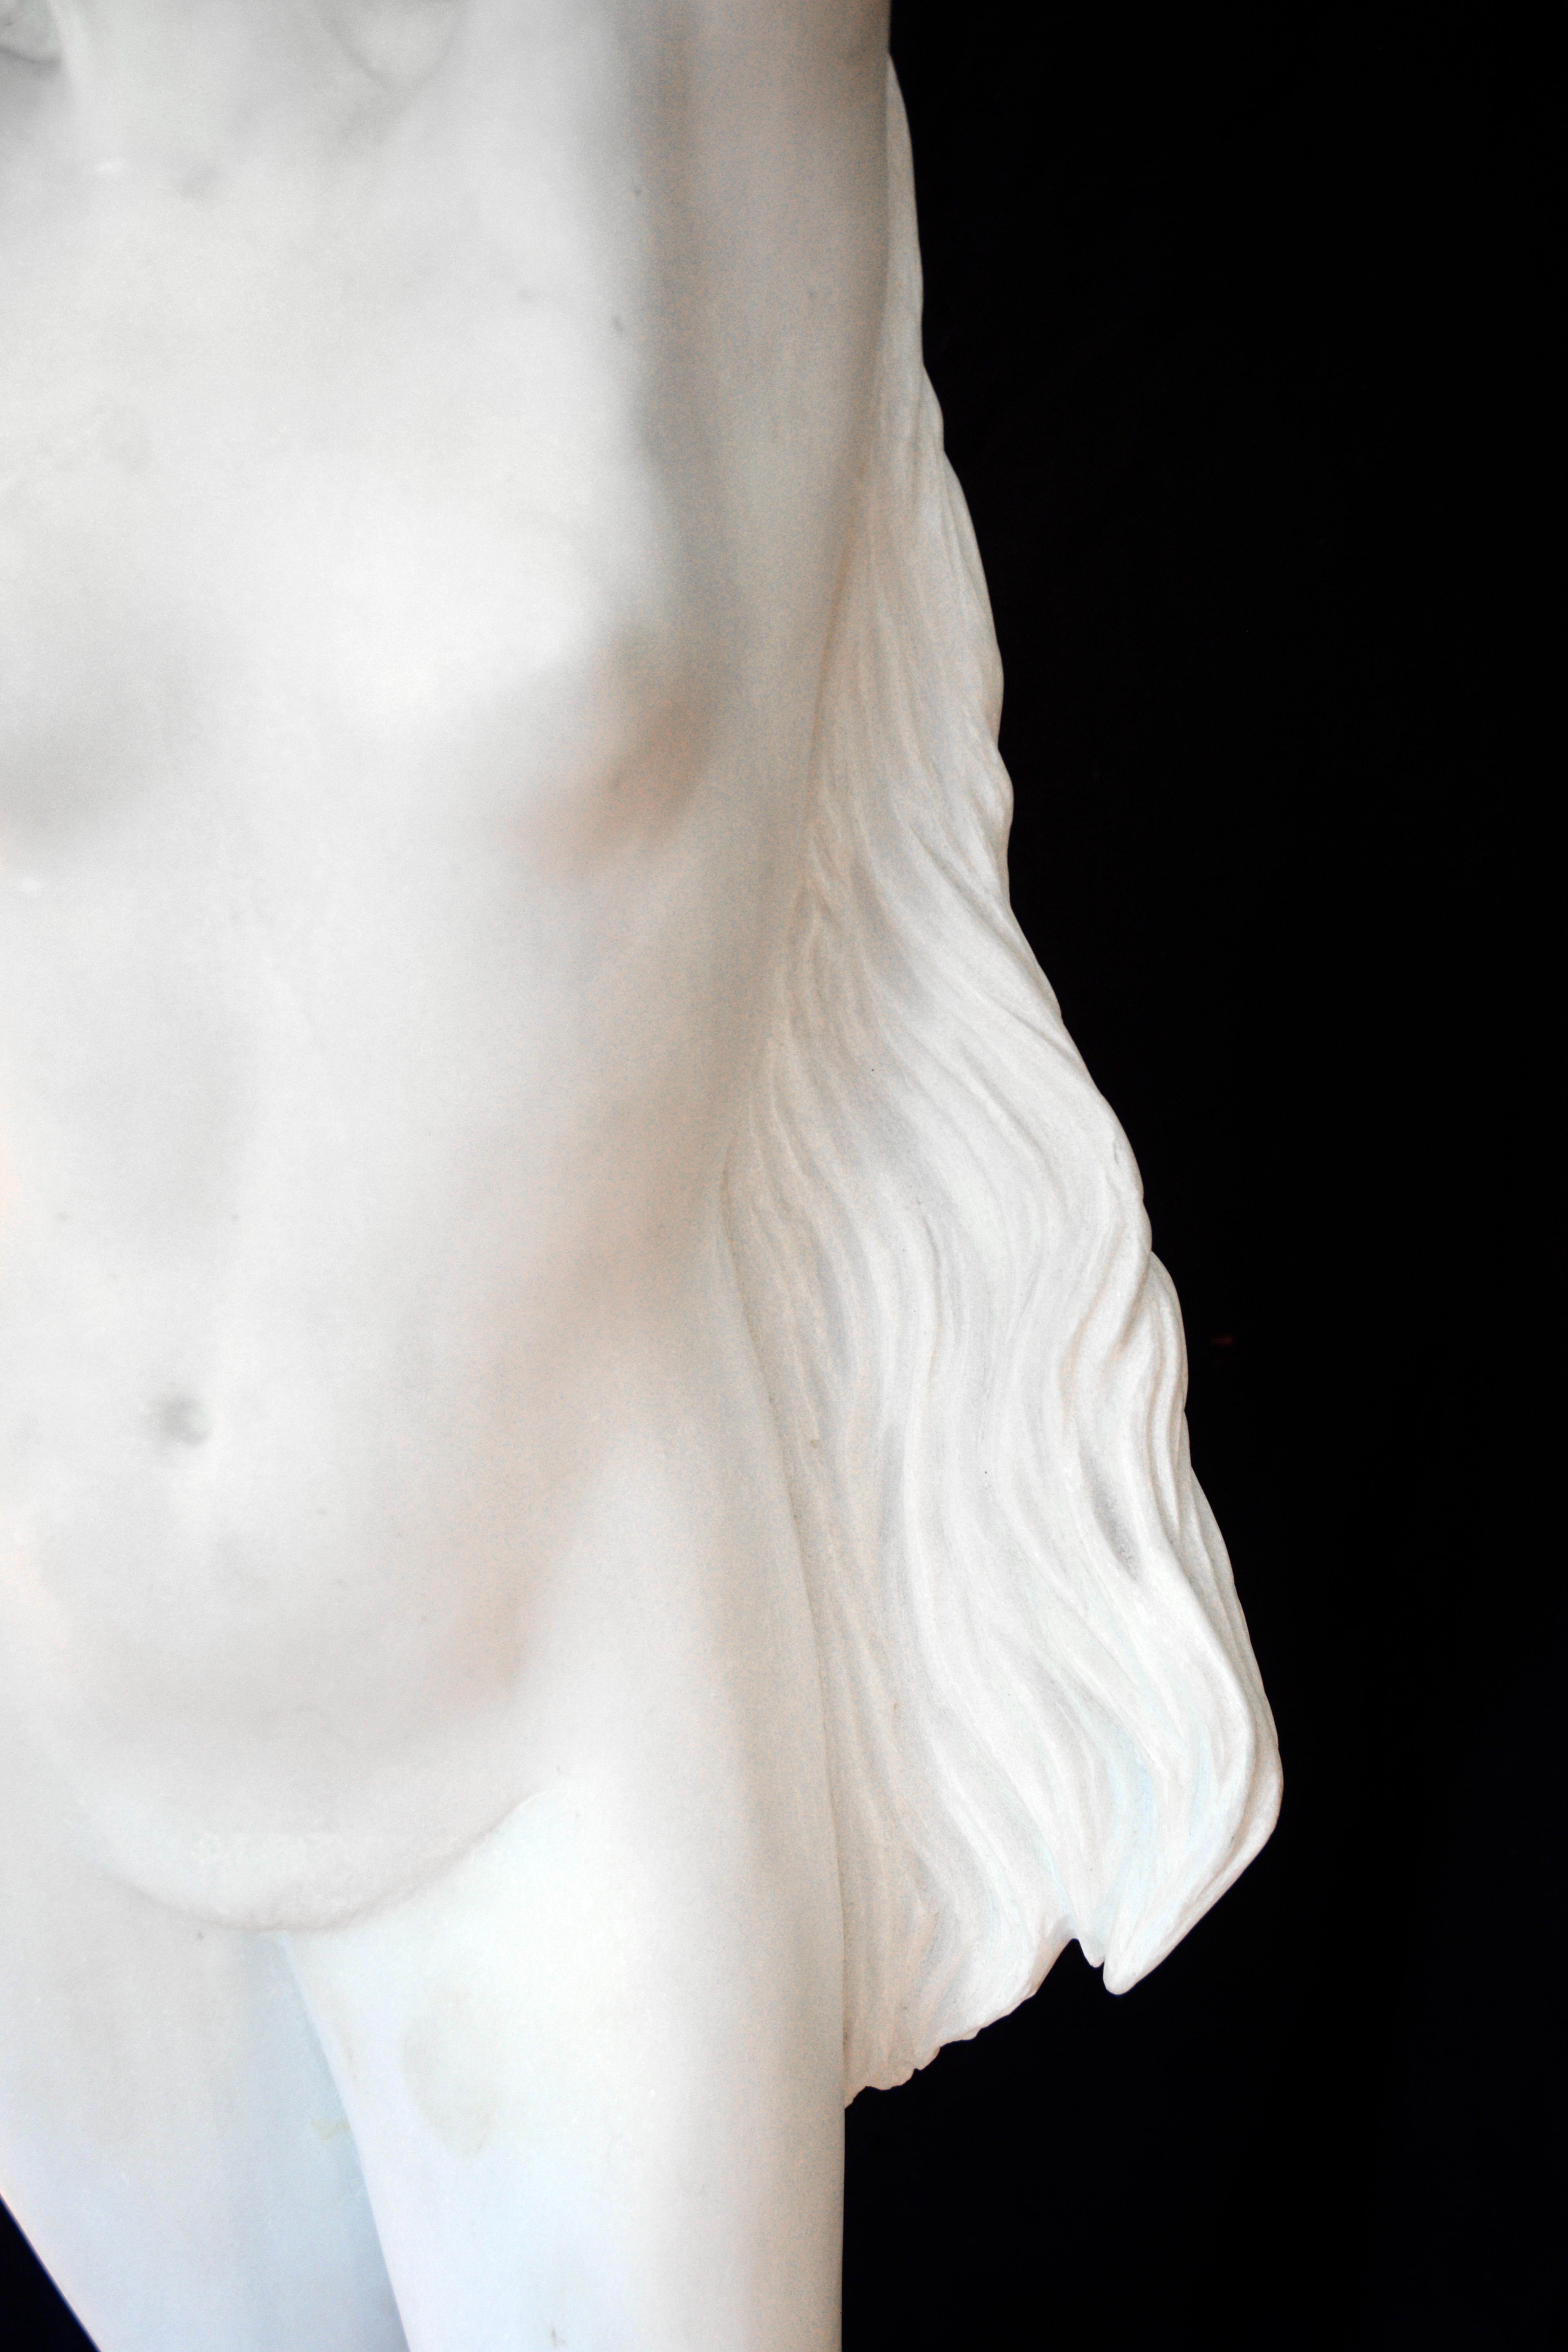 Venus Monumental Marble Statue Passini  - Renaissance Sculpture by M Passini